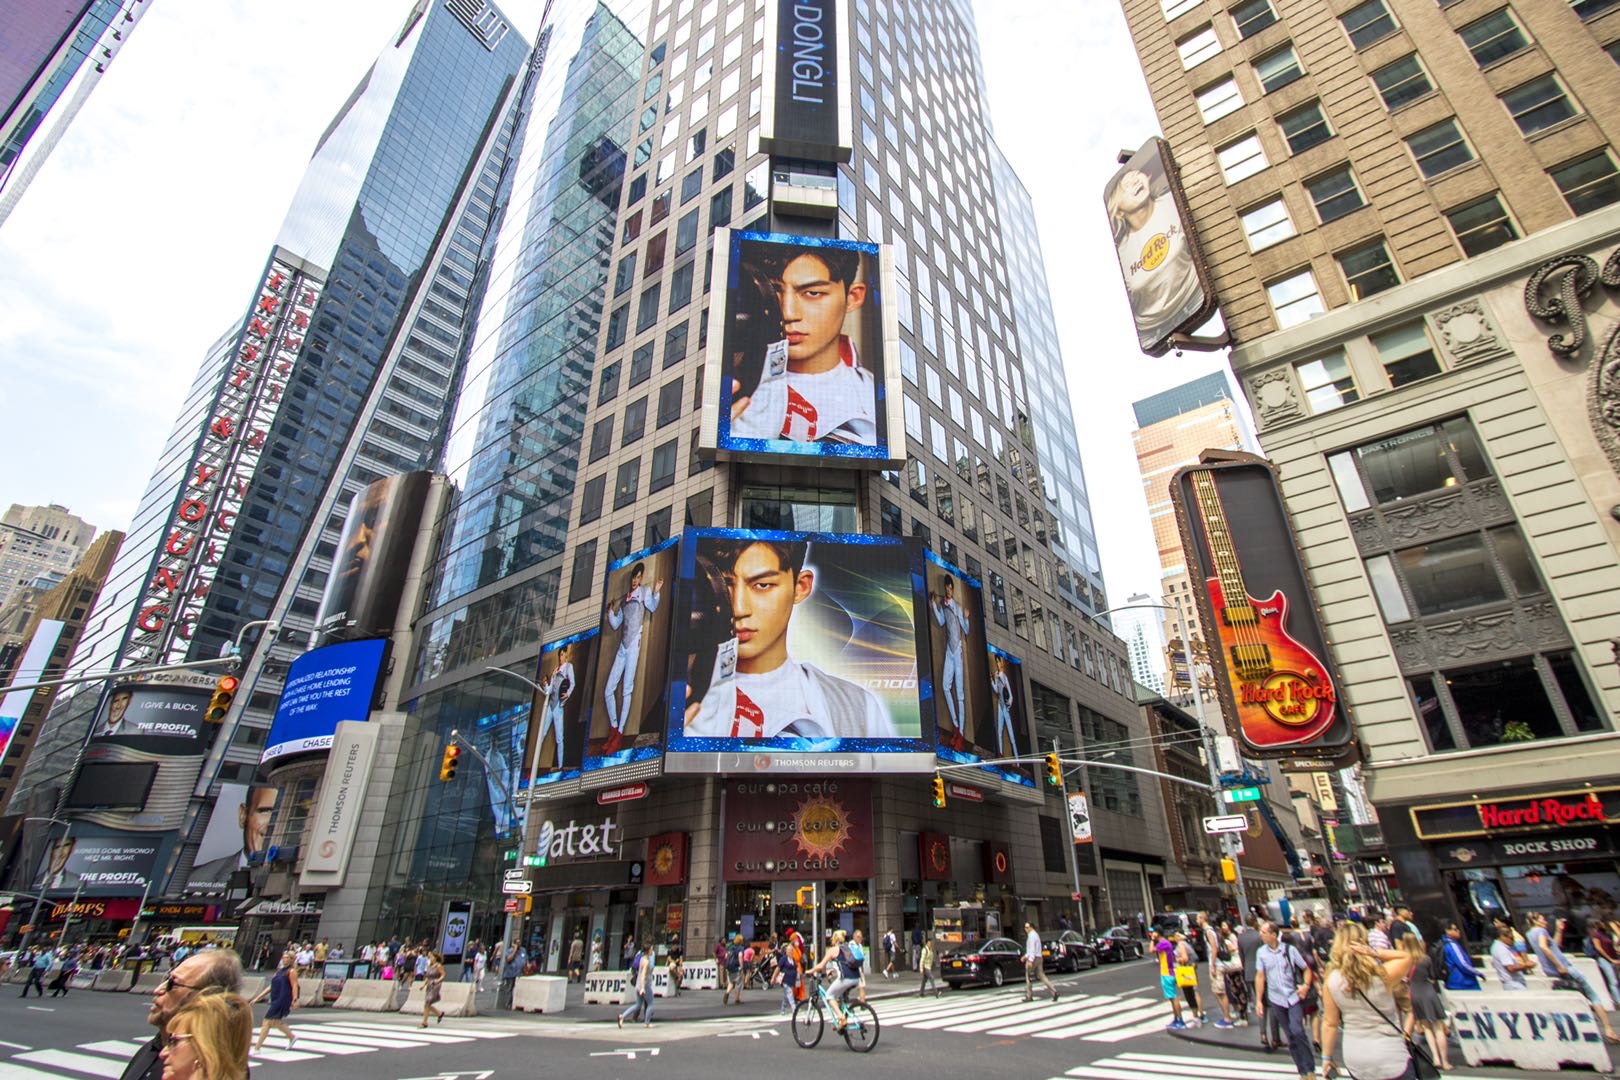 海外美国纽约时代广场汤姆森路透社海外国际LED屏